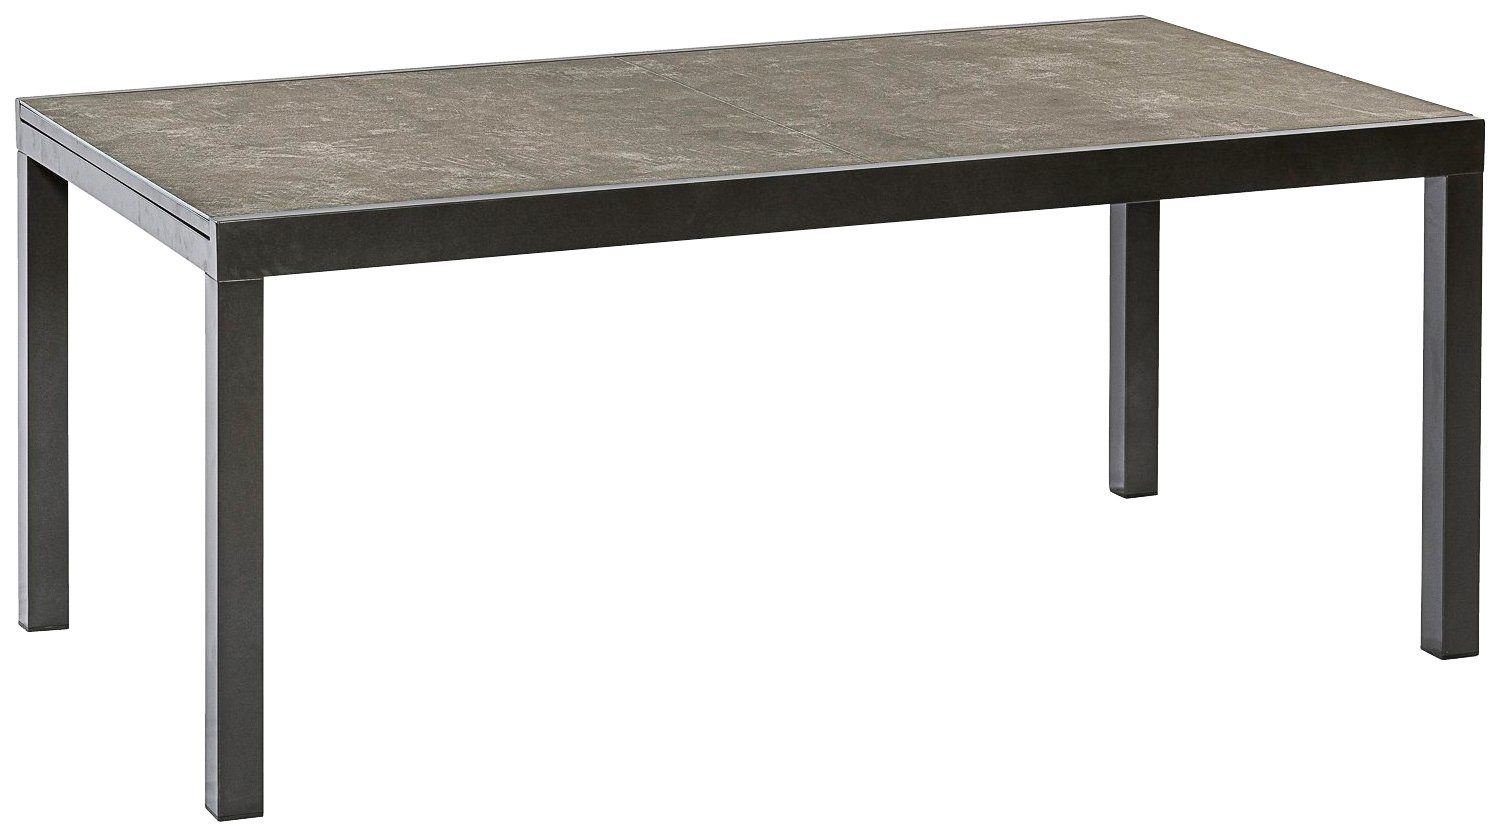 AZ-Tisch, Semi MERXX 100x180 cm Gartentisch